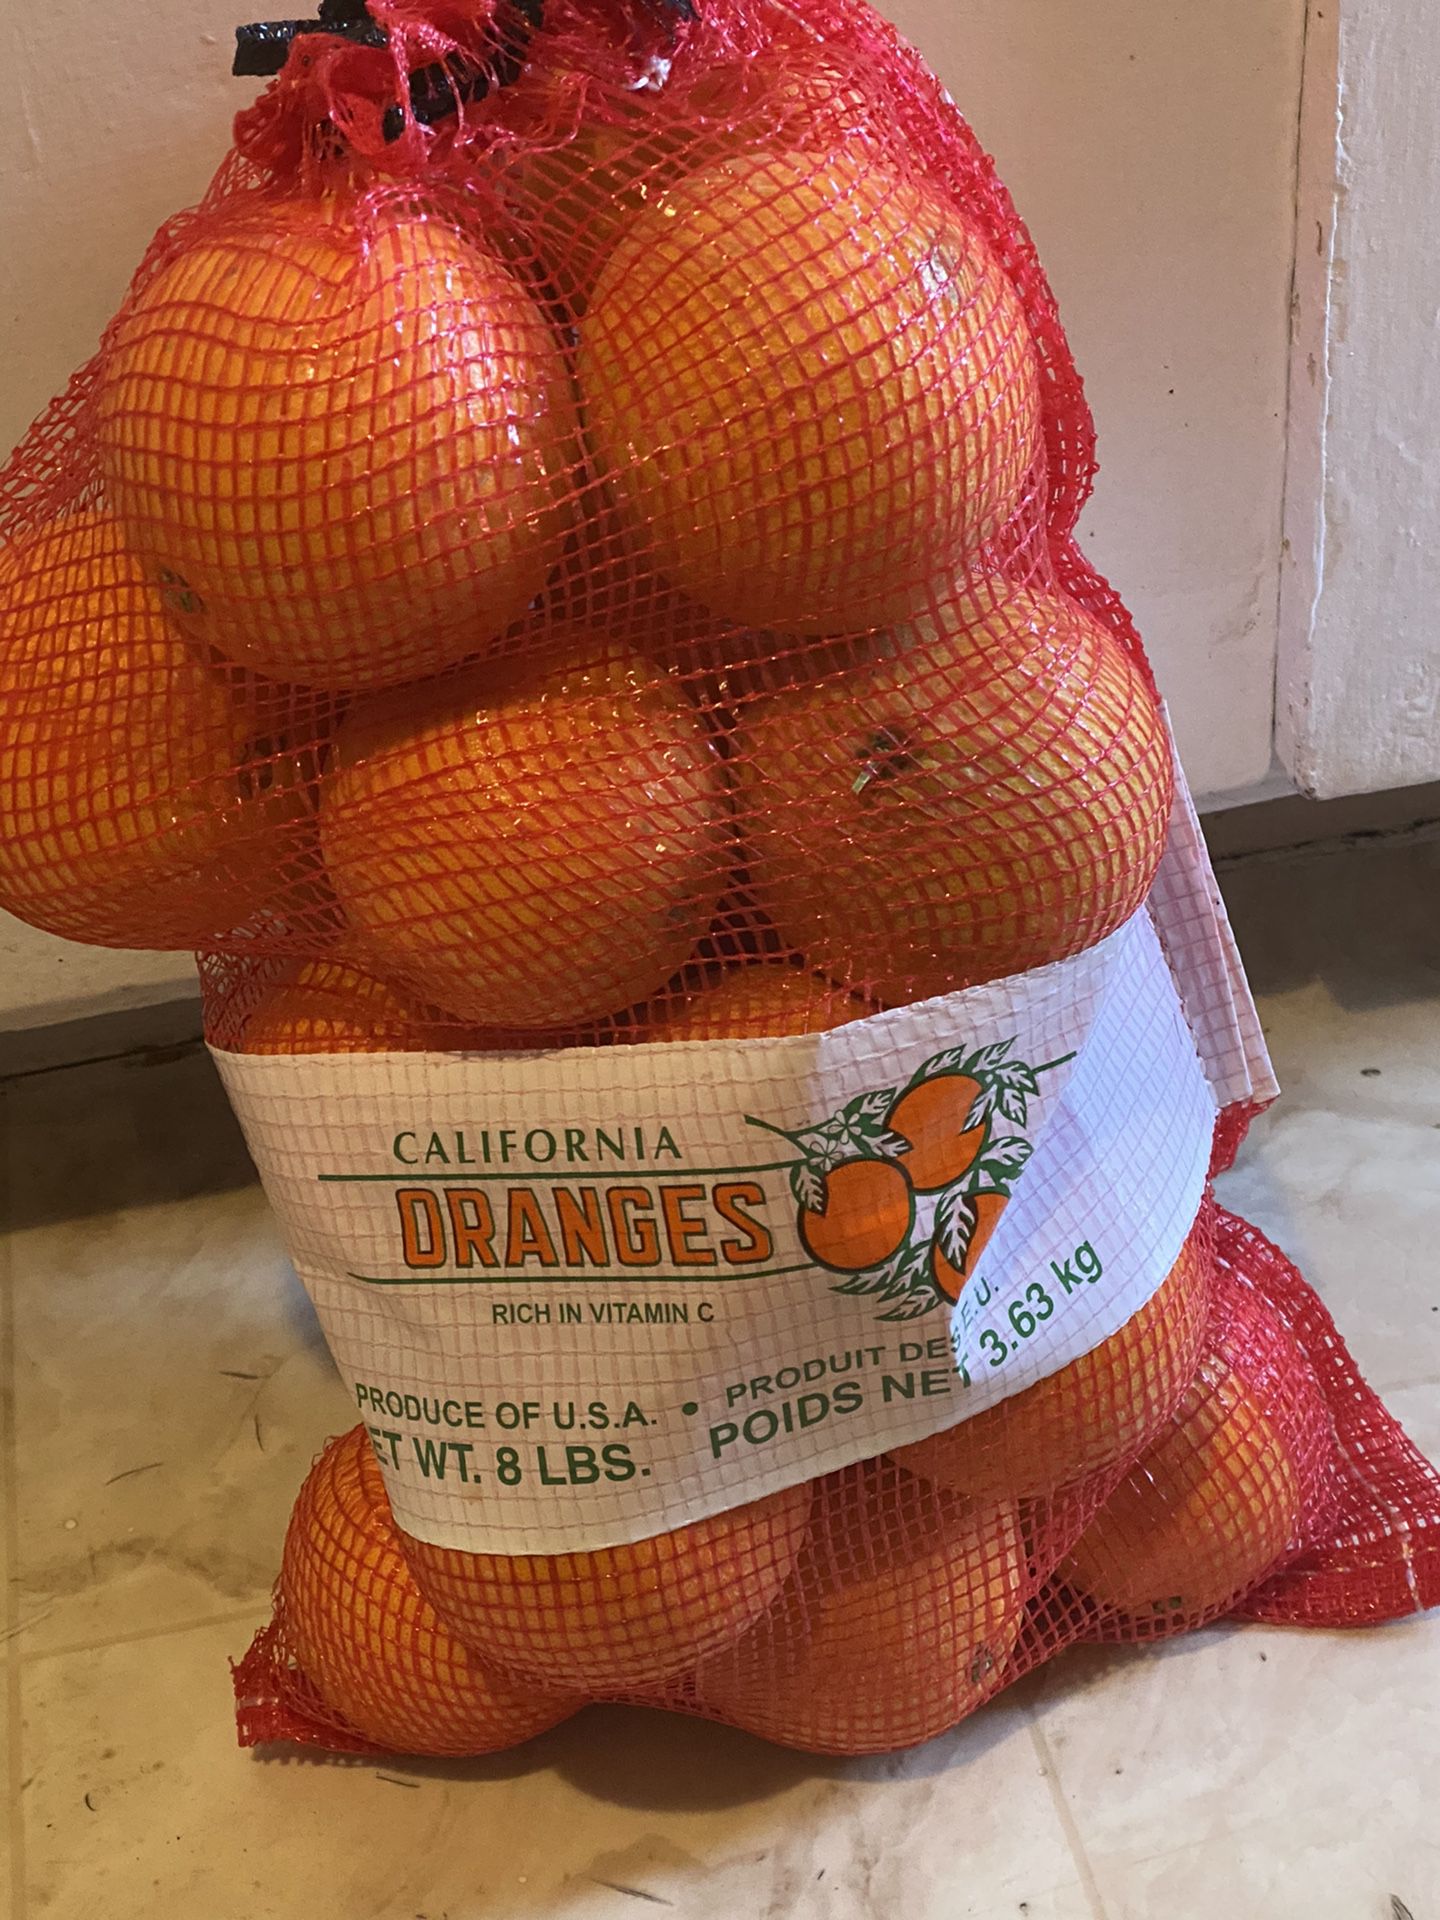 Orange Naranjas